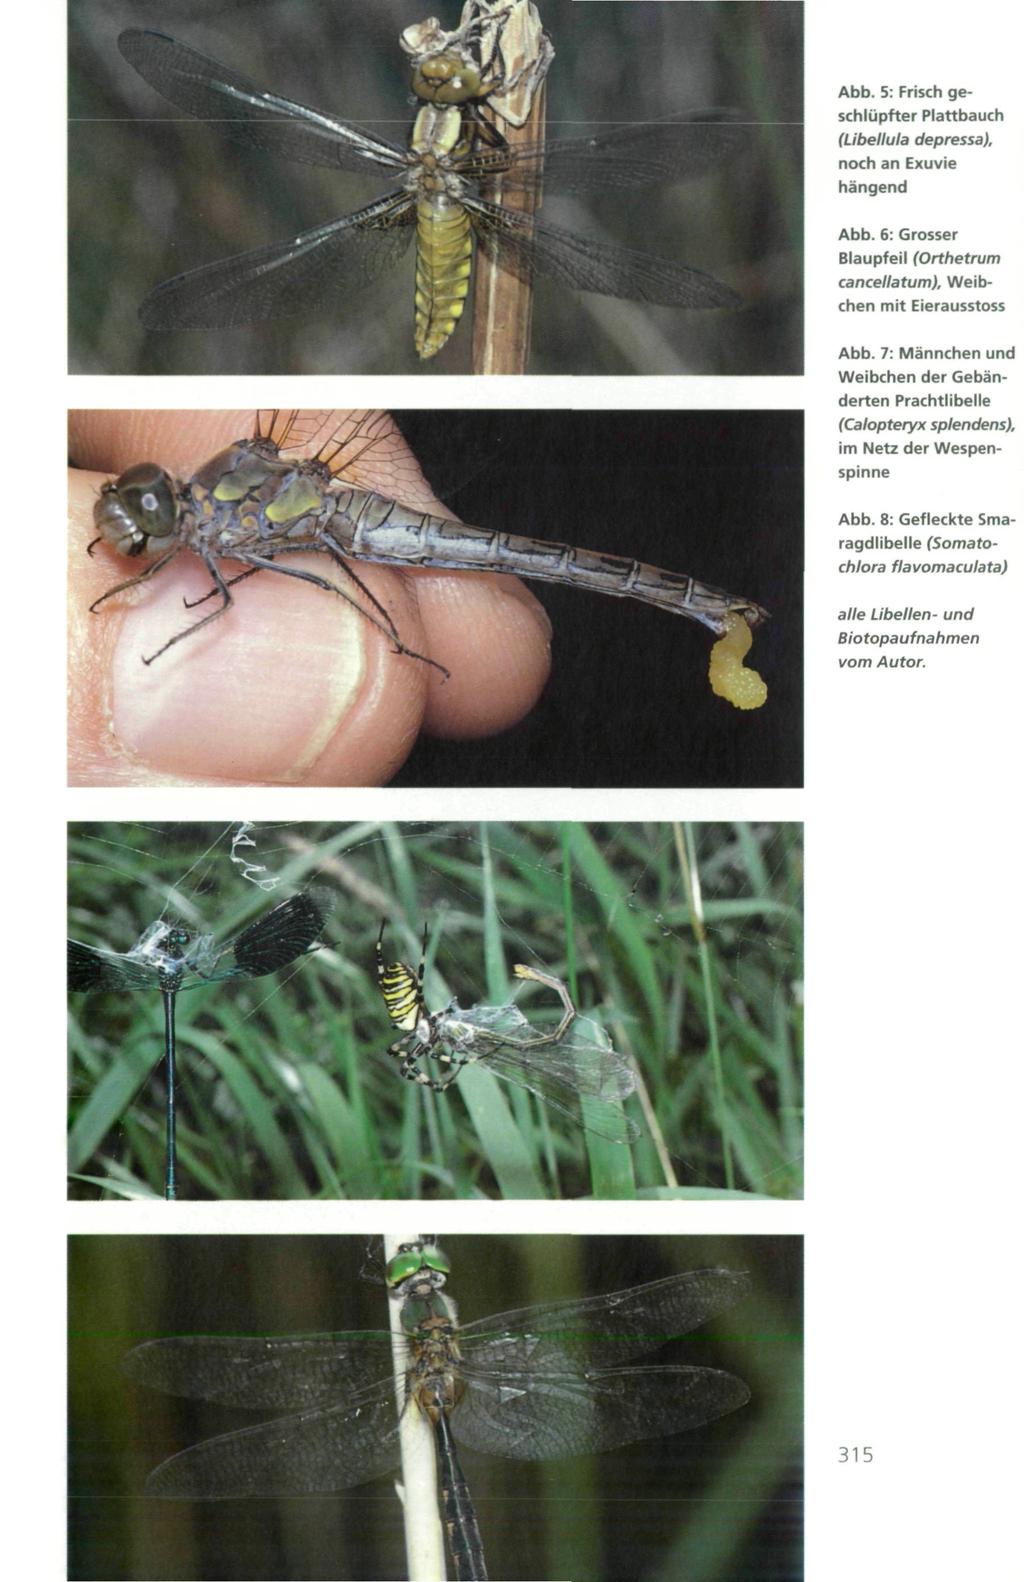 Abb. 5: Frisch geschlüpfter Plattbauch (Libellula depressa), noch an Exuvie hängend Abb. 6: Grosser Blaupfeil (Orthetrum cancellatum), Weibchen mit Eierausstoss Abb.